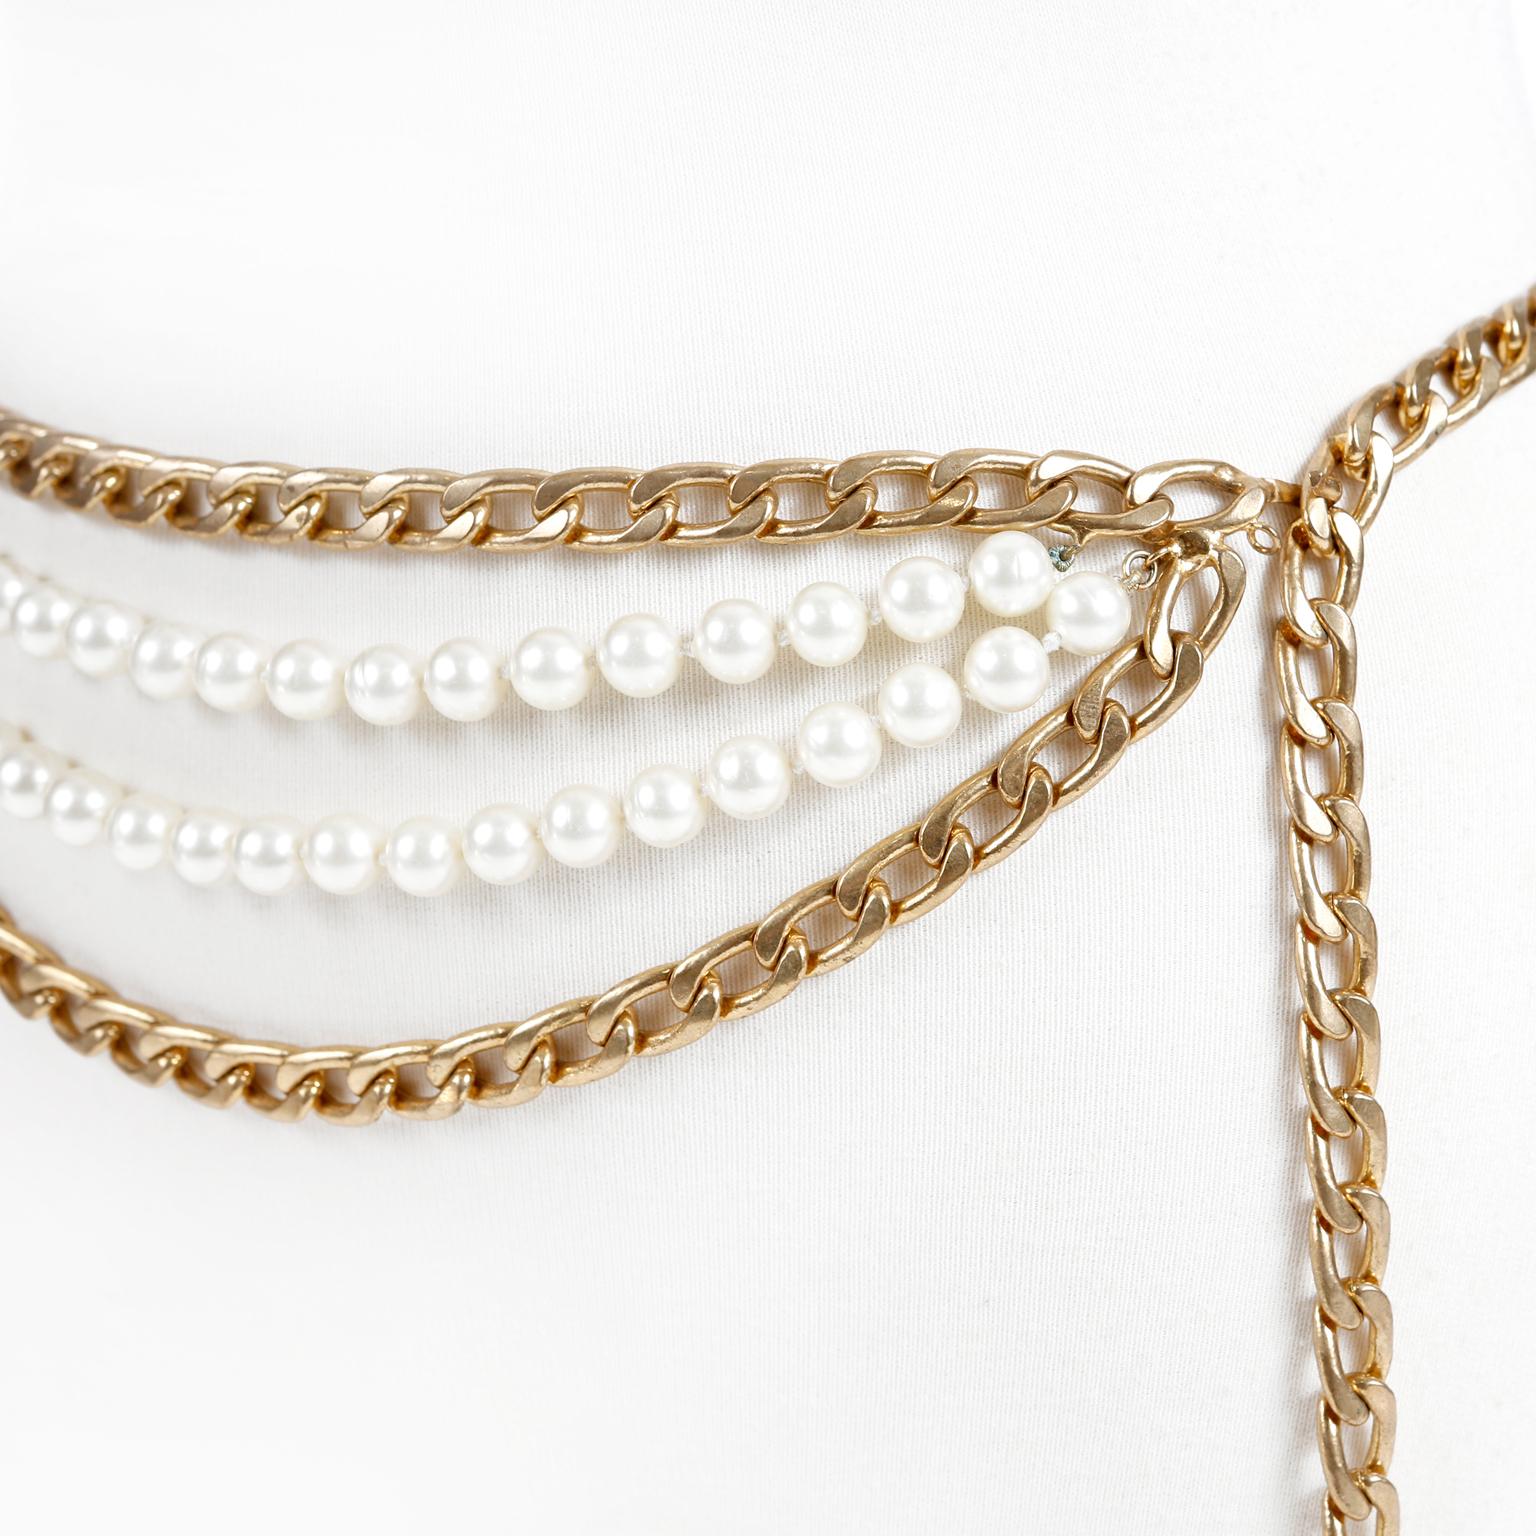 Cette authentique ceinture Chanel à double chaîne en or et pompon en perles est en excellent état.  Ce modèle très unique associe une double chaîne en métal doré à une double rangée de fausses perles. Un grand pompon en perles dorées pend à